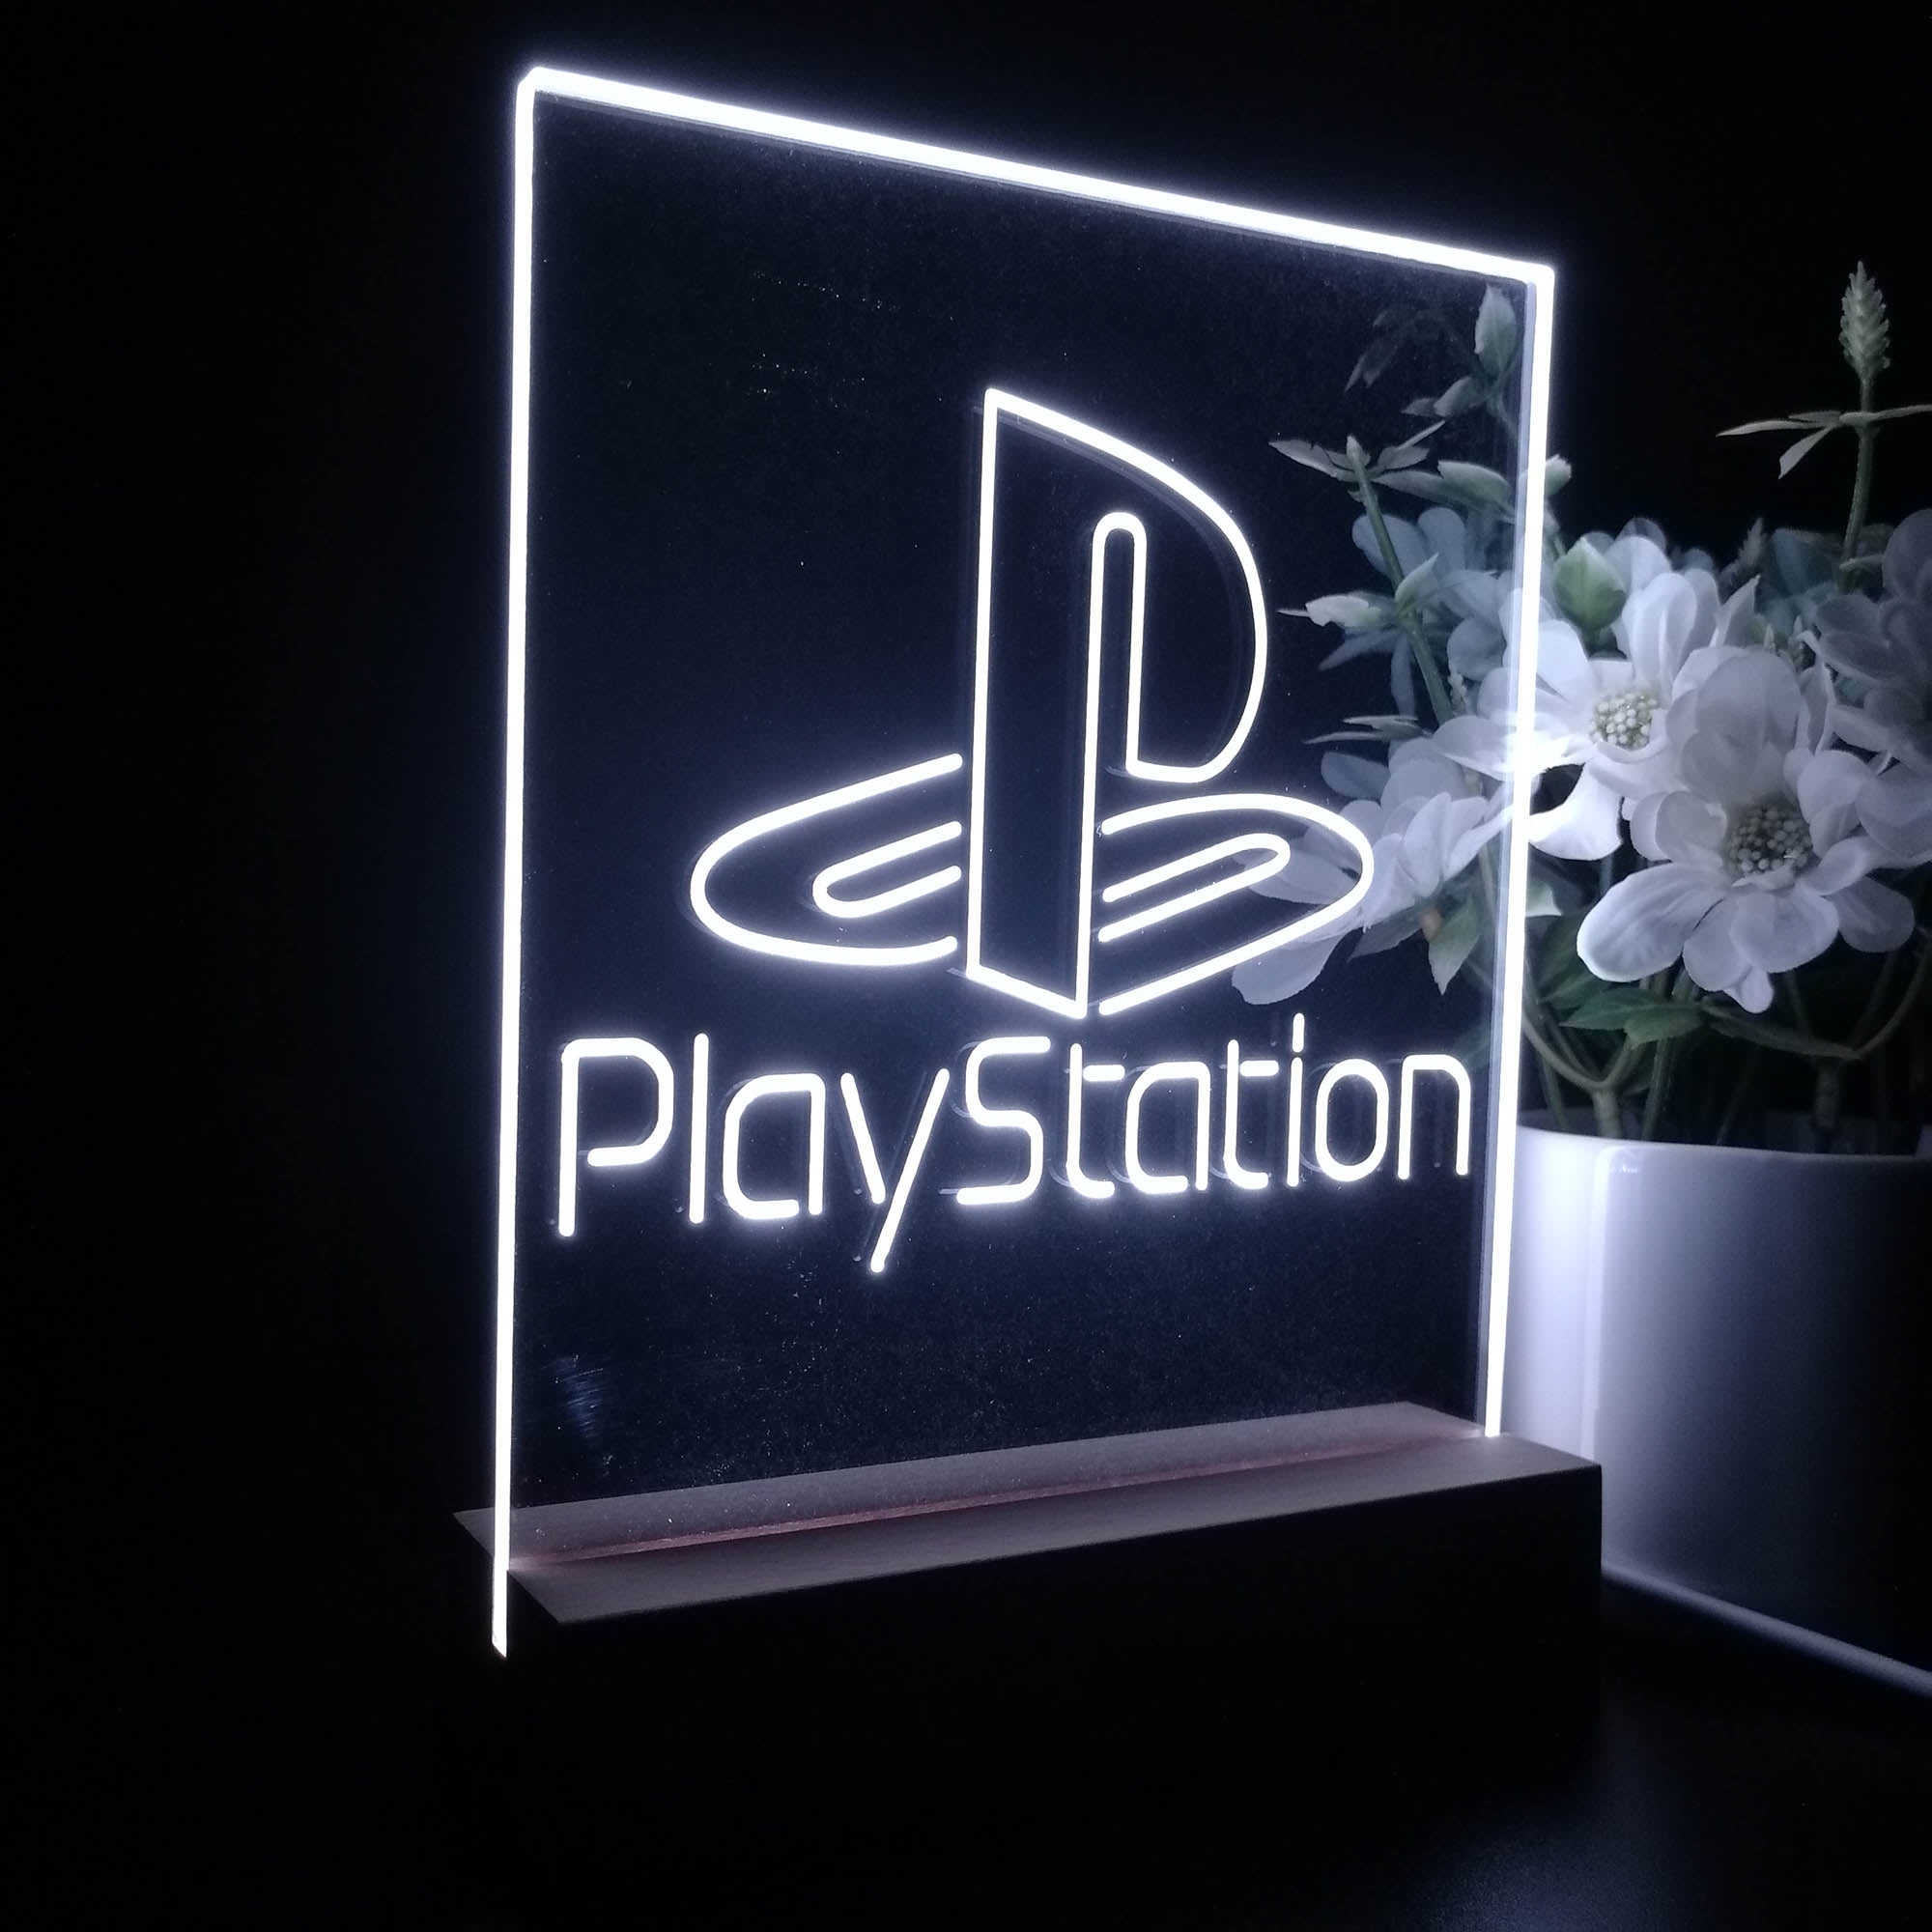 Playstation 3D LED Optical Illusion Sleep Night Light Table Lamp